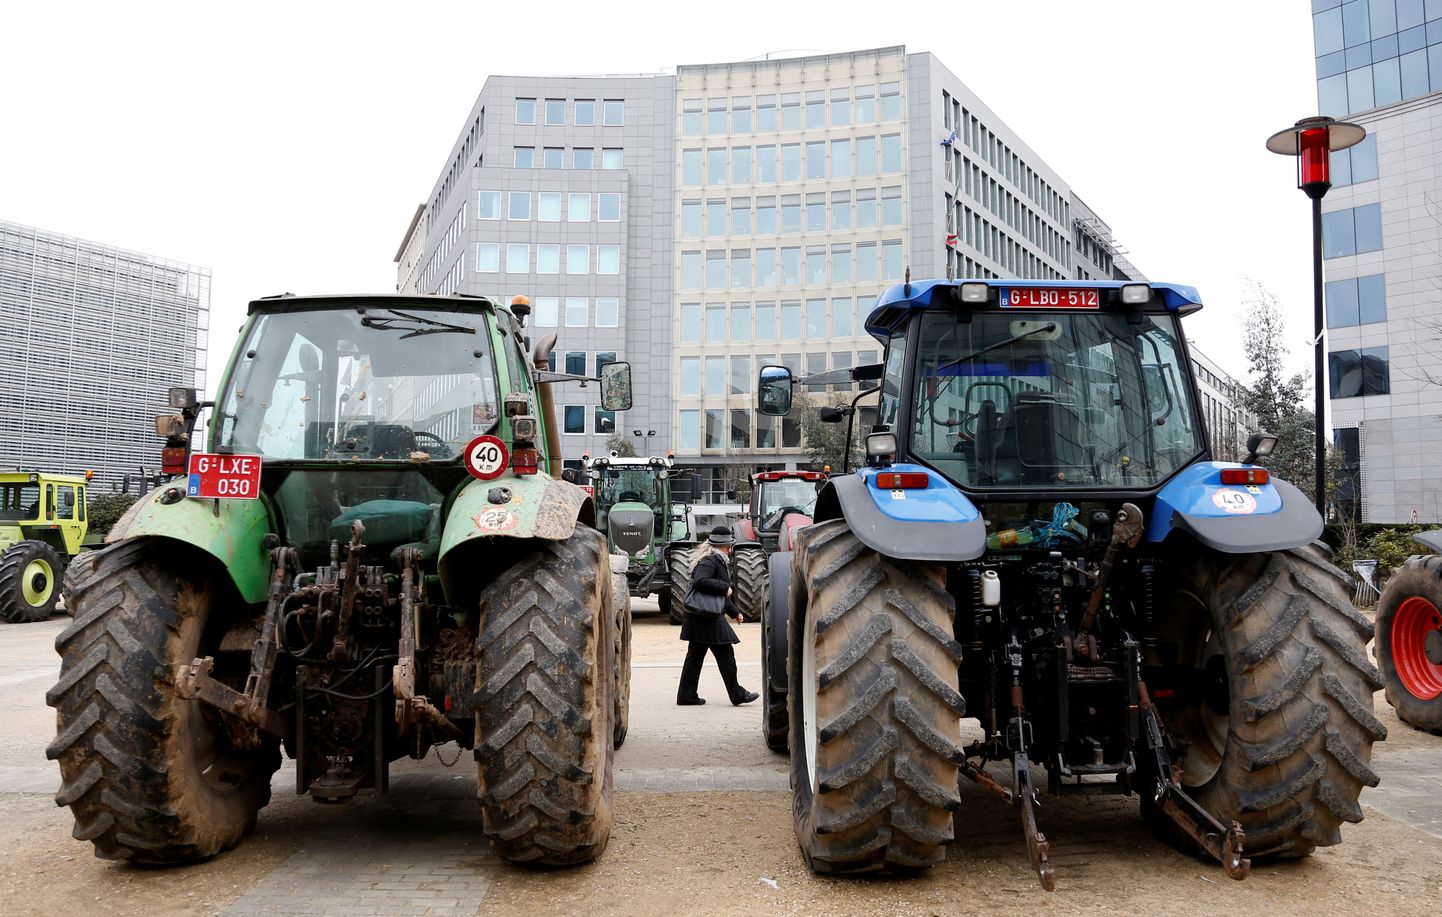 Beļģu zemnieku protesti Briselē. Ilustratīvs foto.